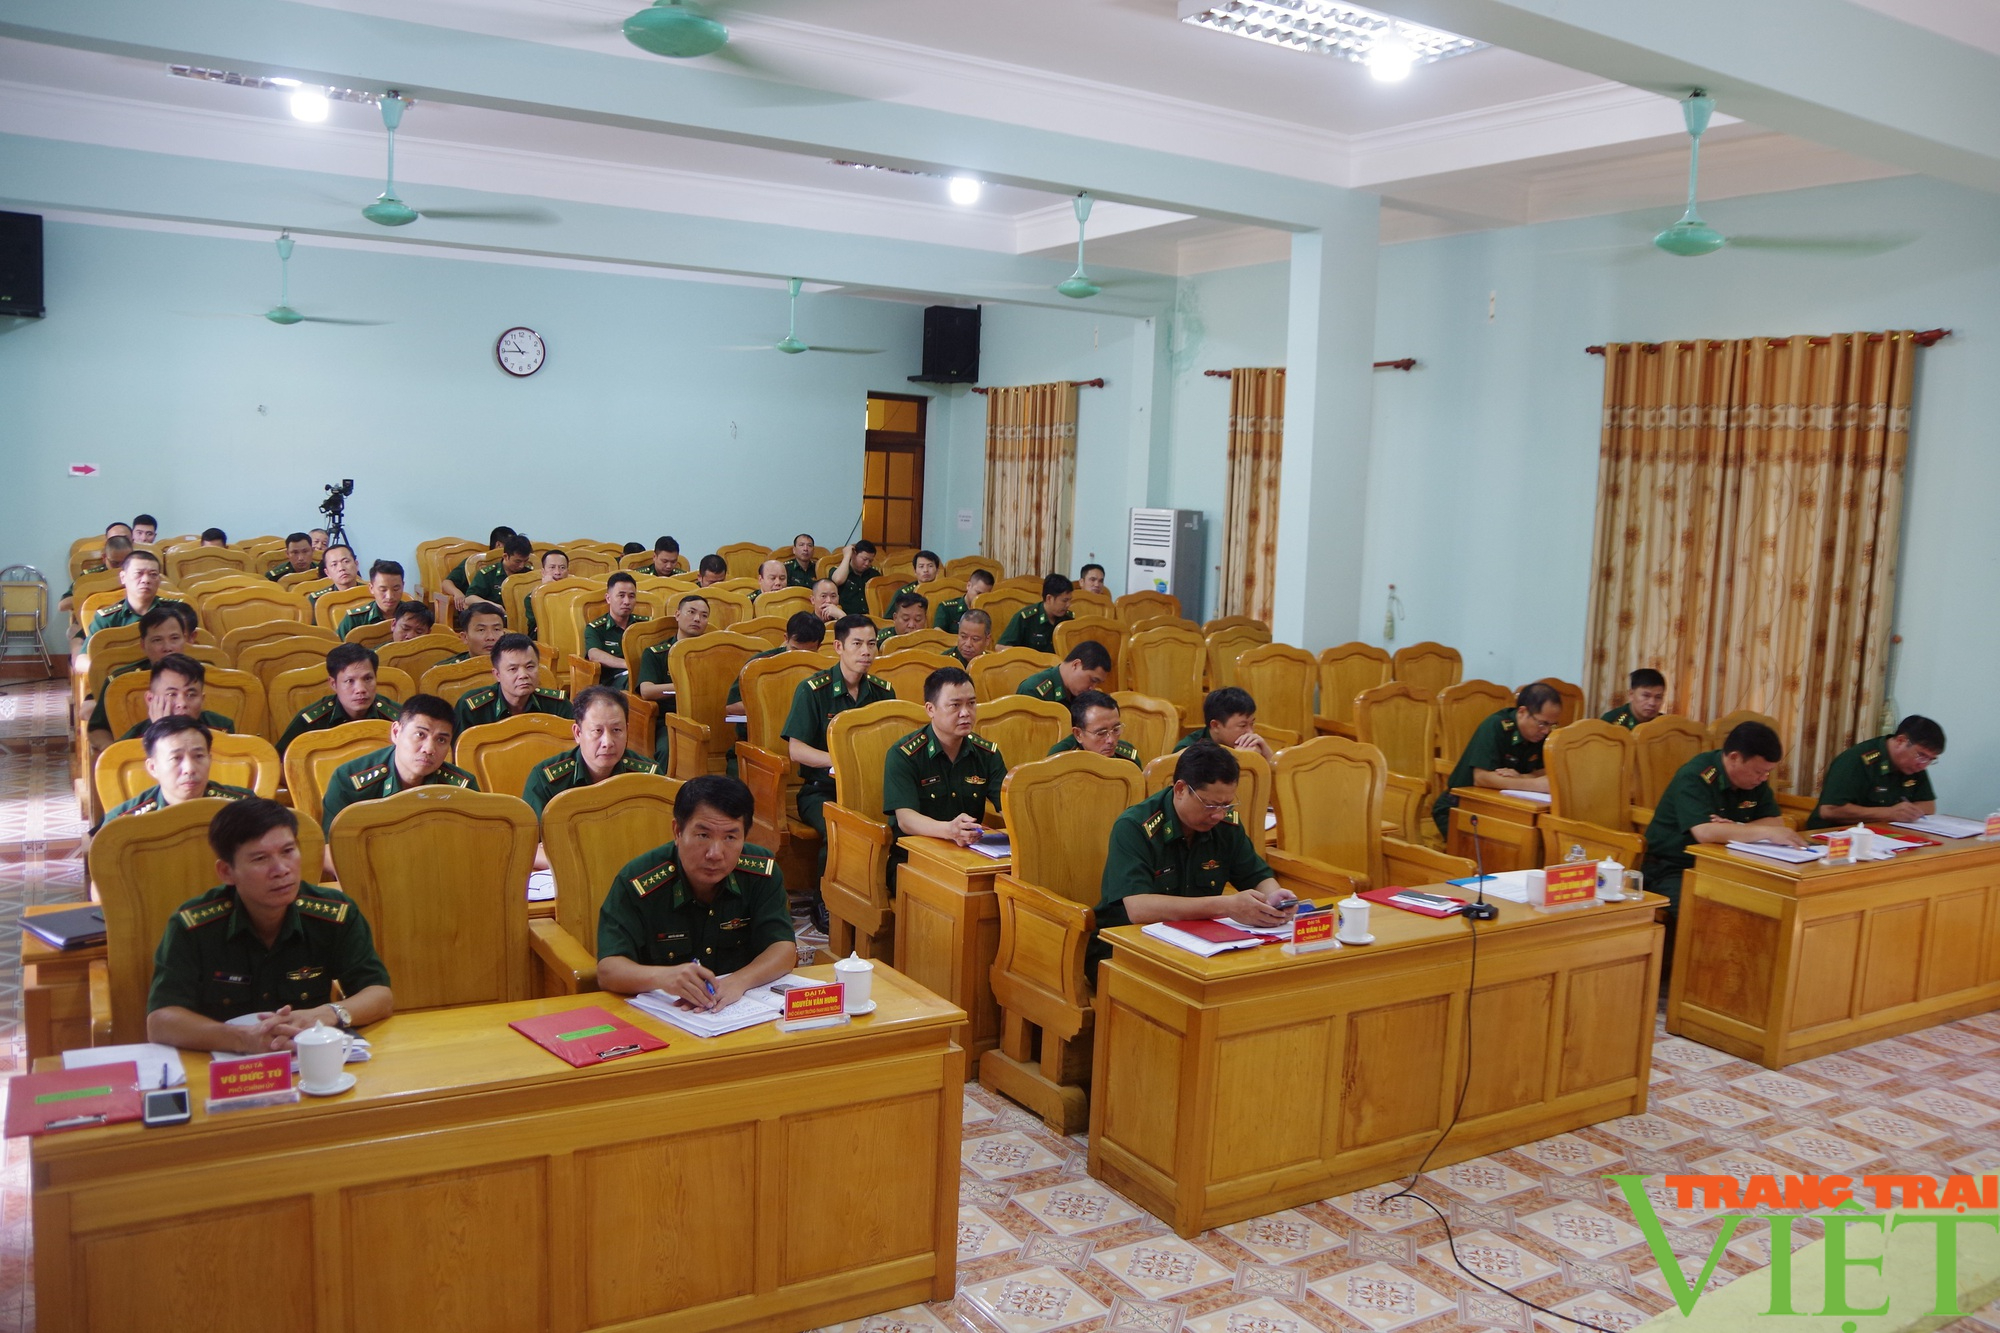 Bộ chỉ huy BĐBP tỉnh Sơn La: Nâng cao chất lượng chính trị, tư tưởng, bảo vệ nội bộ - Ảnh 3.